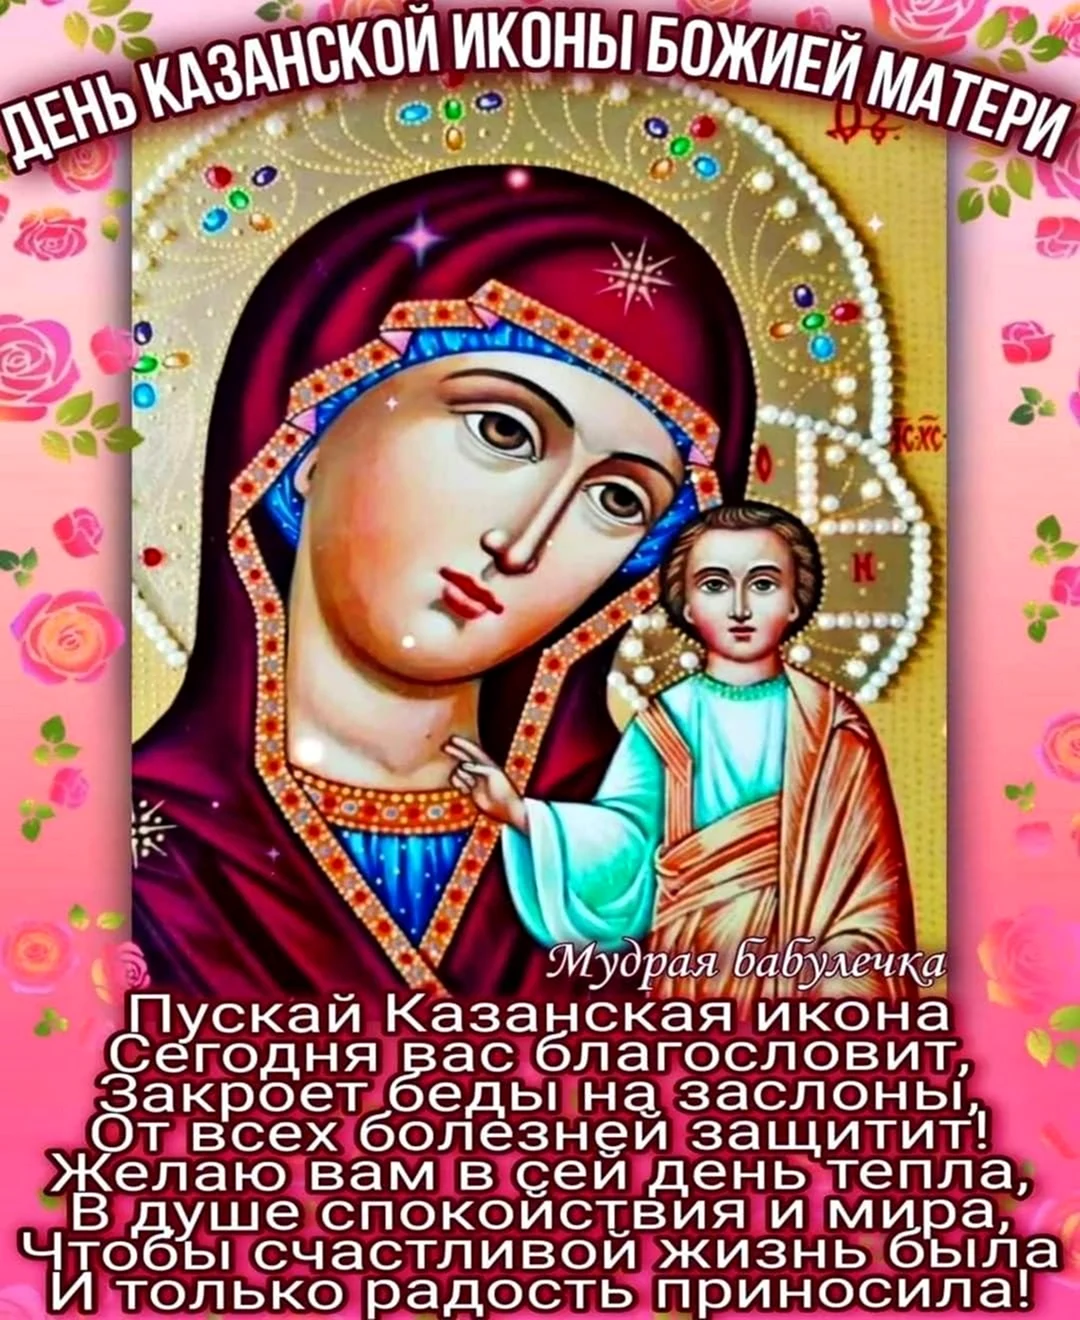 Казанская икона Божией матери праздник 2021. Поздравление на праздник